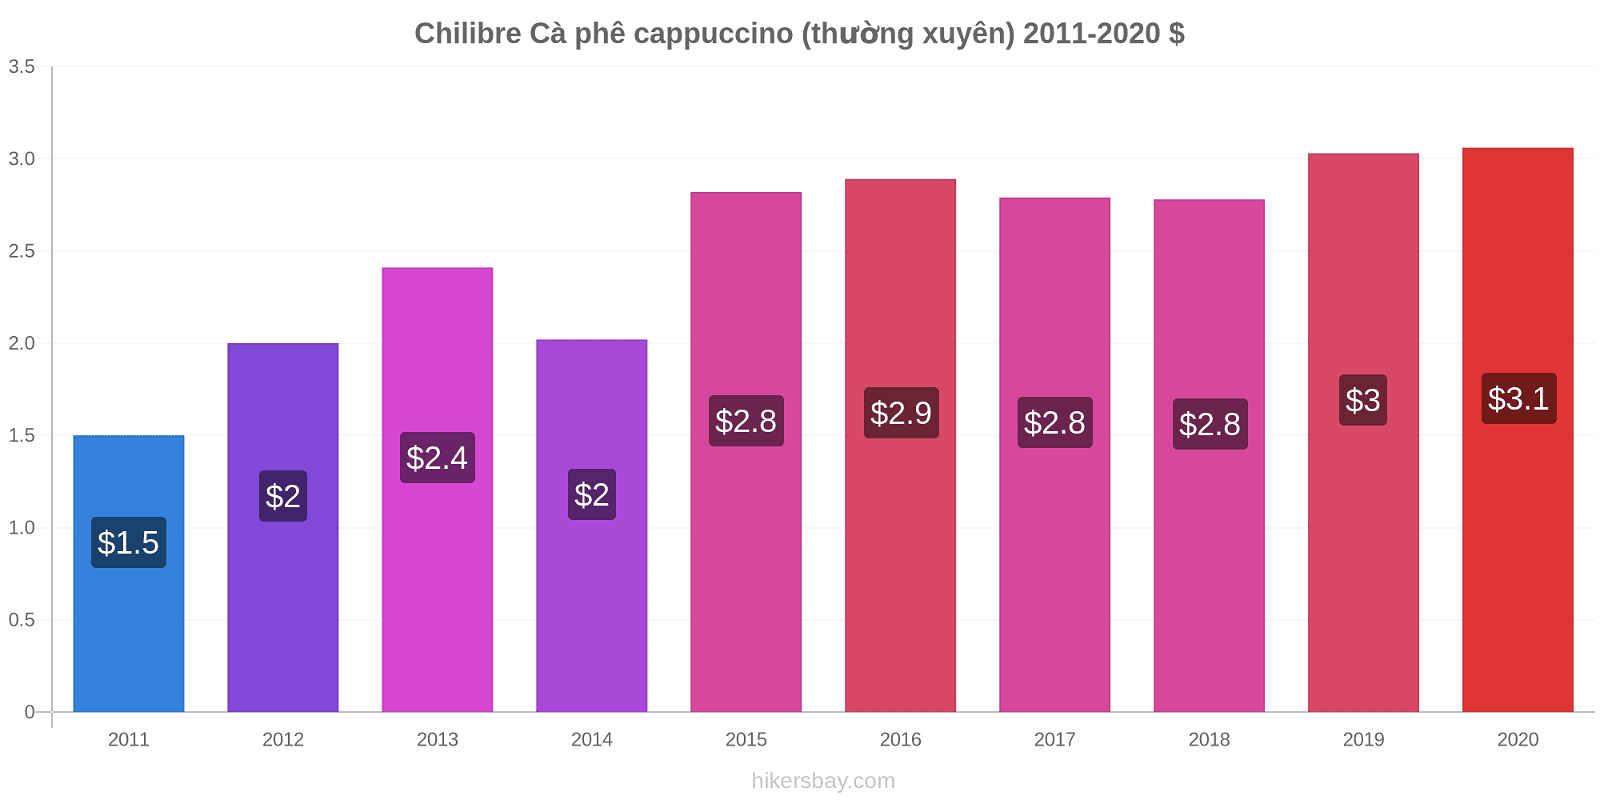 Chilibre thay đổi giá Cà phê cappuccino (thường xuyên) hikersbay.com